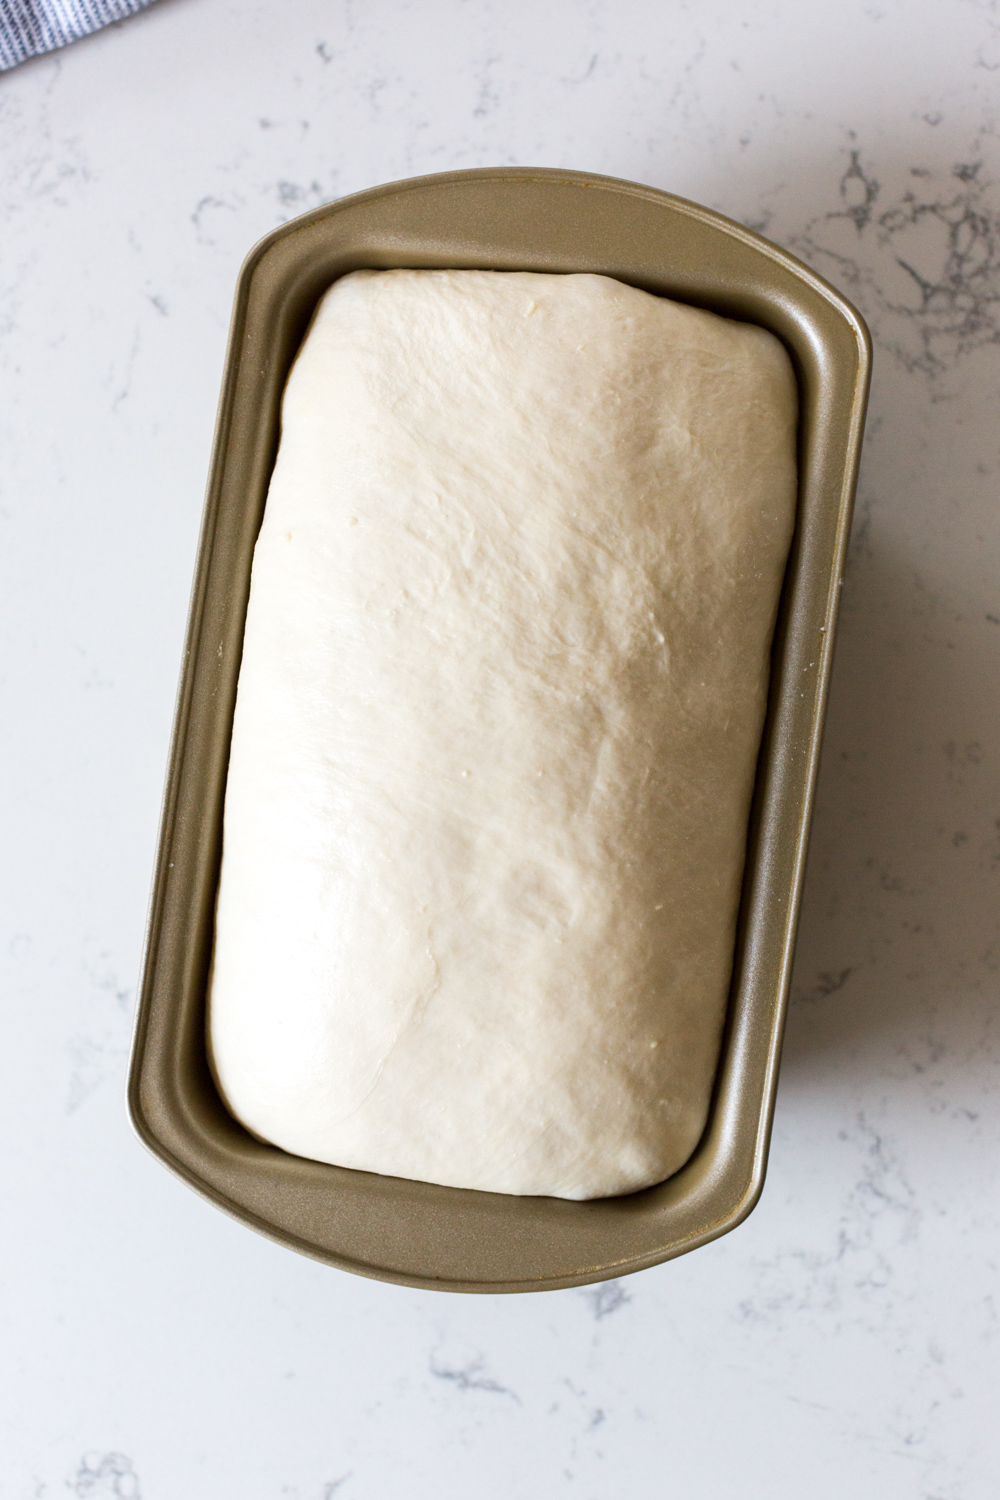 Best Basic White Bread dough rise